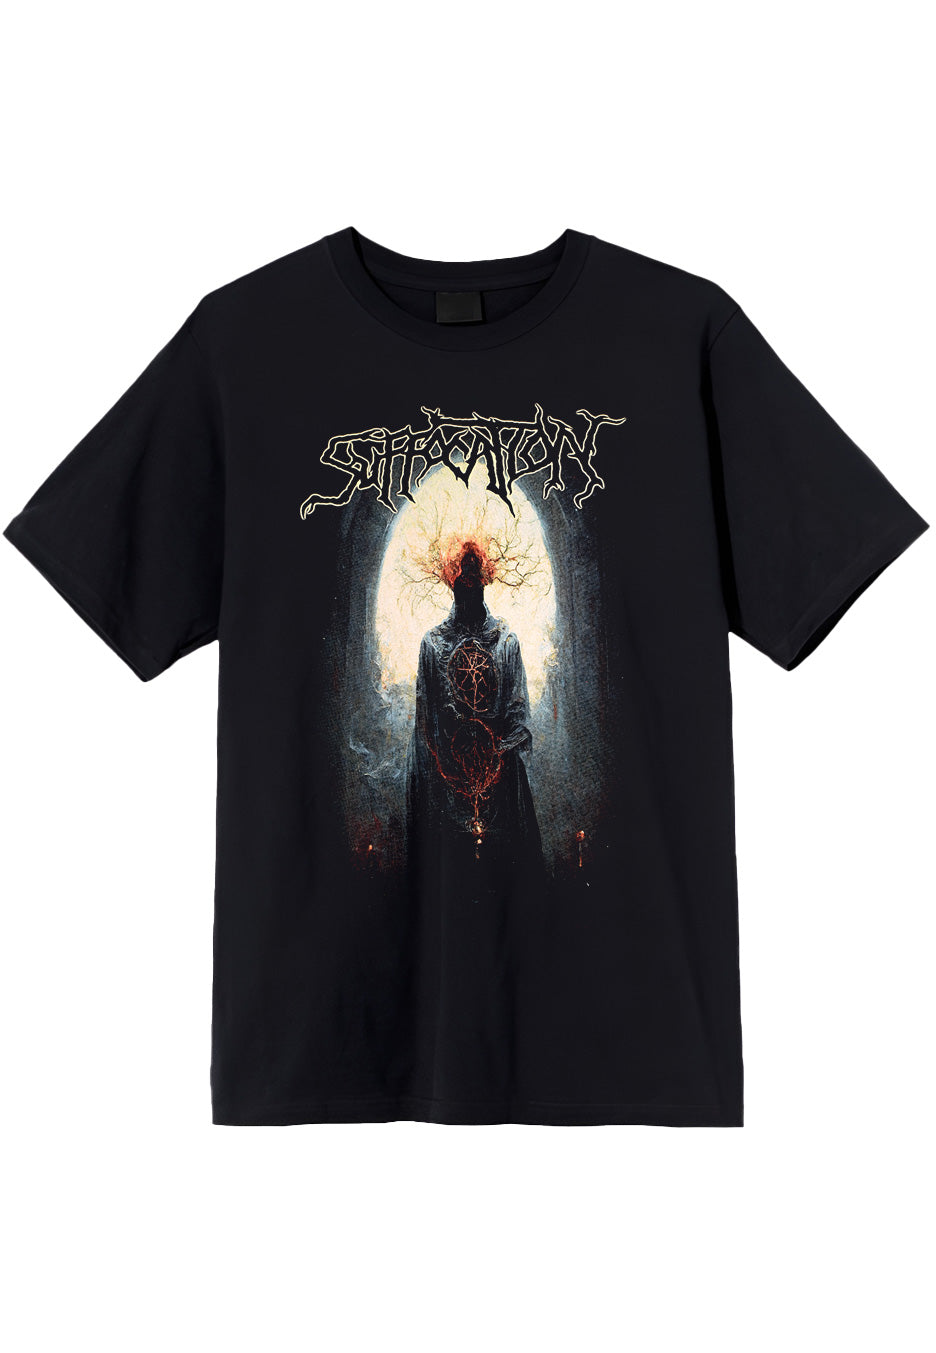 Suffocation - Deep Roots - T-Shirt